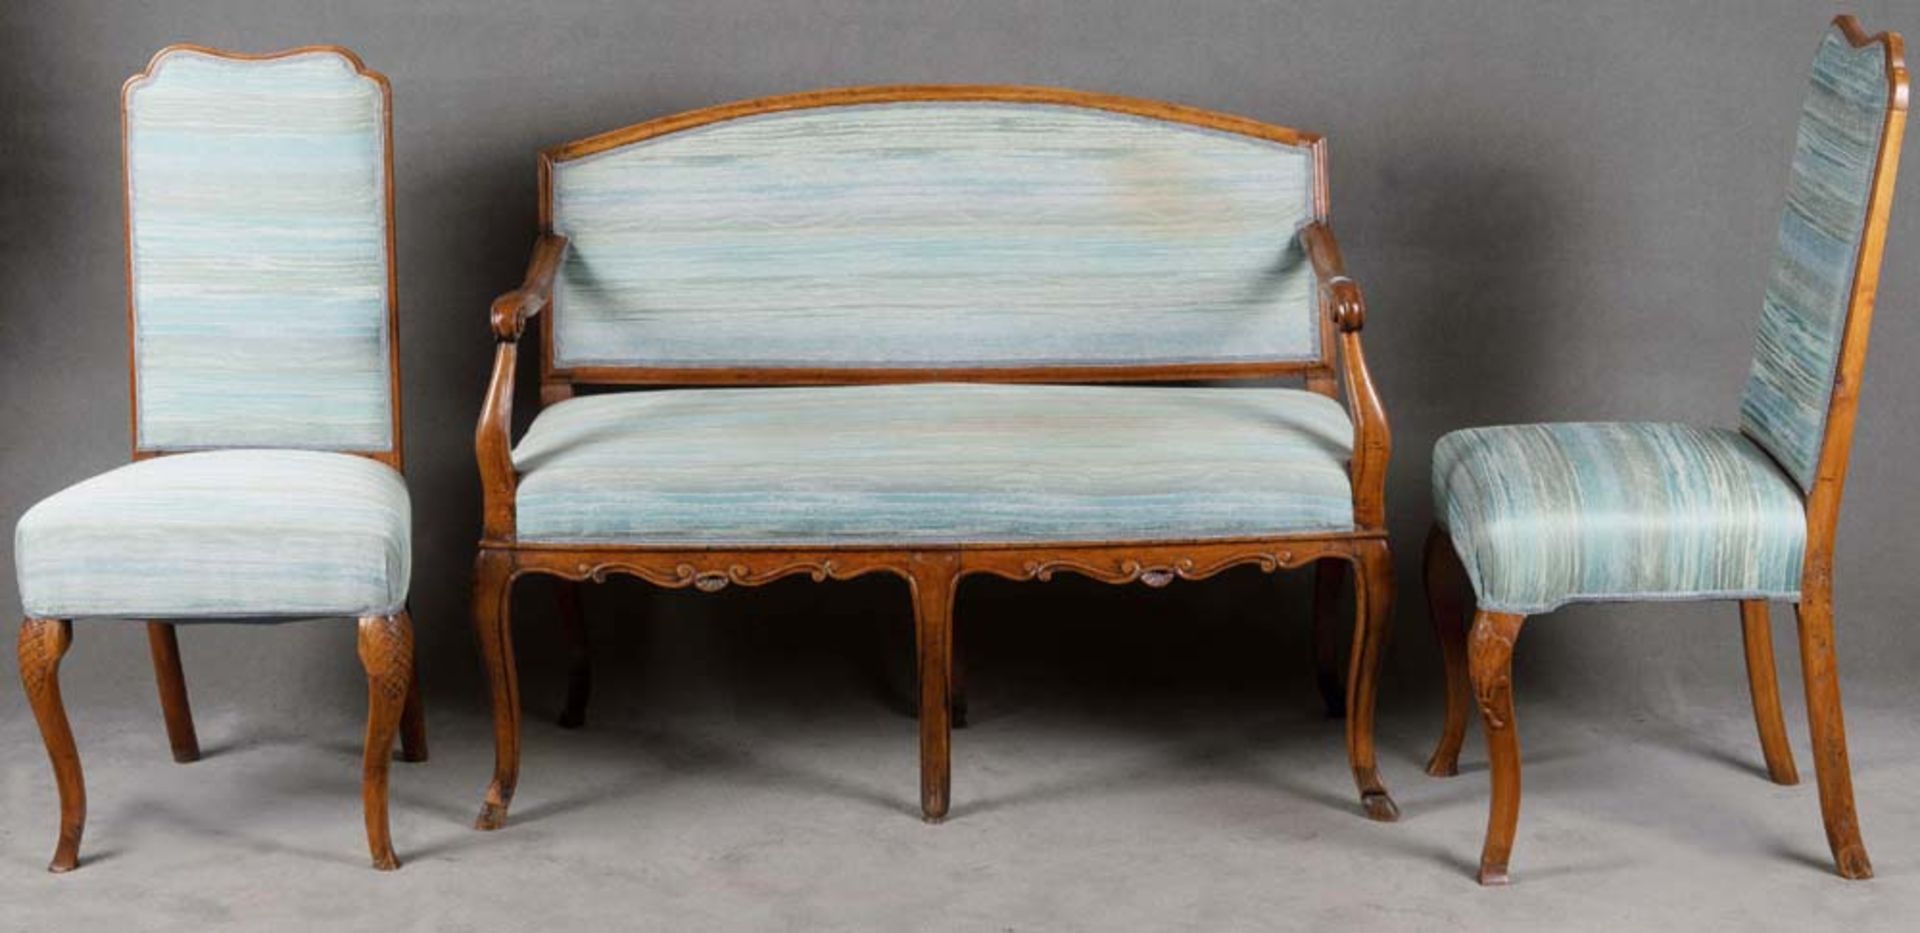 Dreitlge. Sitzgarnitur. Deutsch 18. Jh. Bestehend aus: Ein Paar Stühle und ein Sofa (B=120 cm).